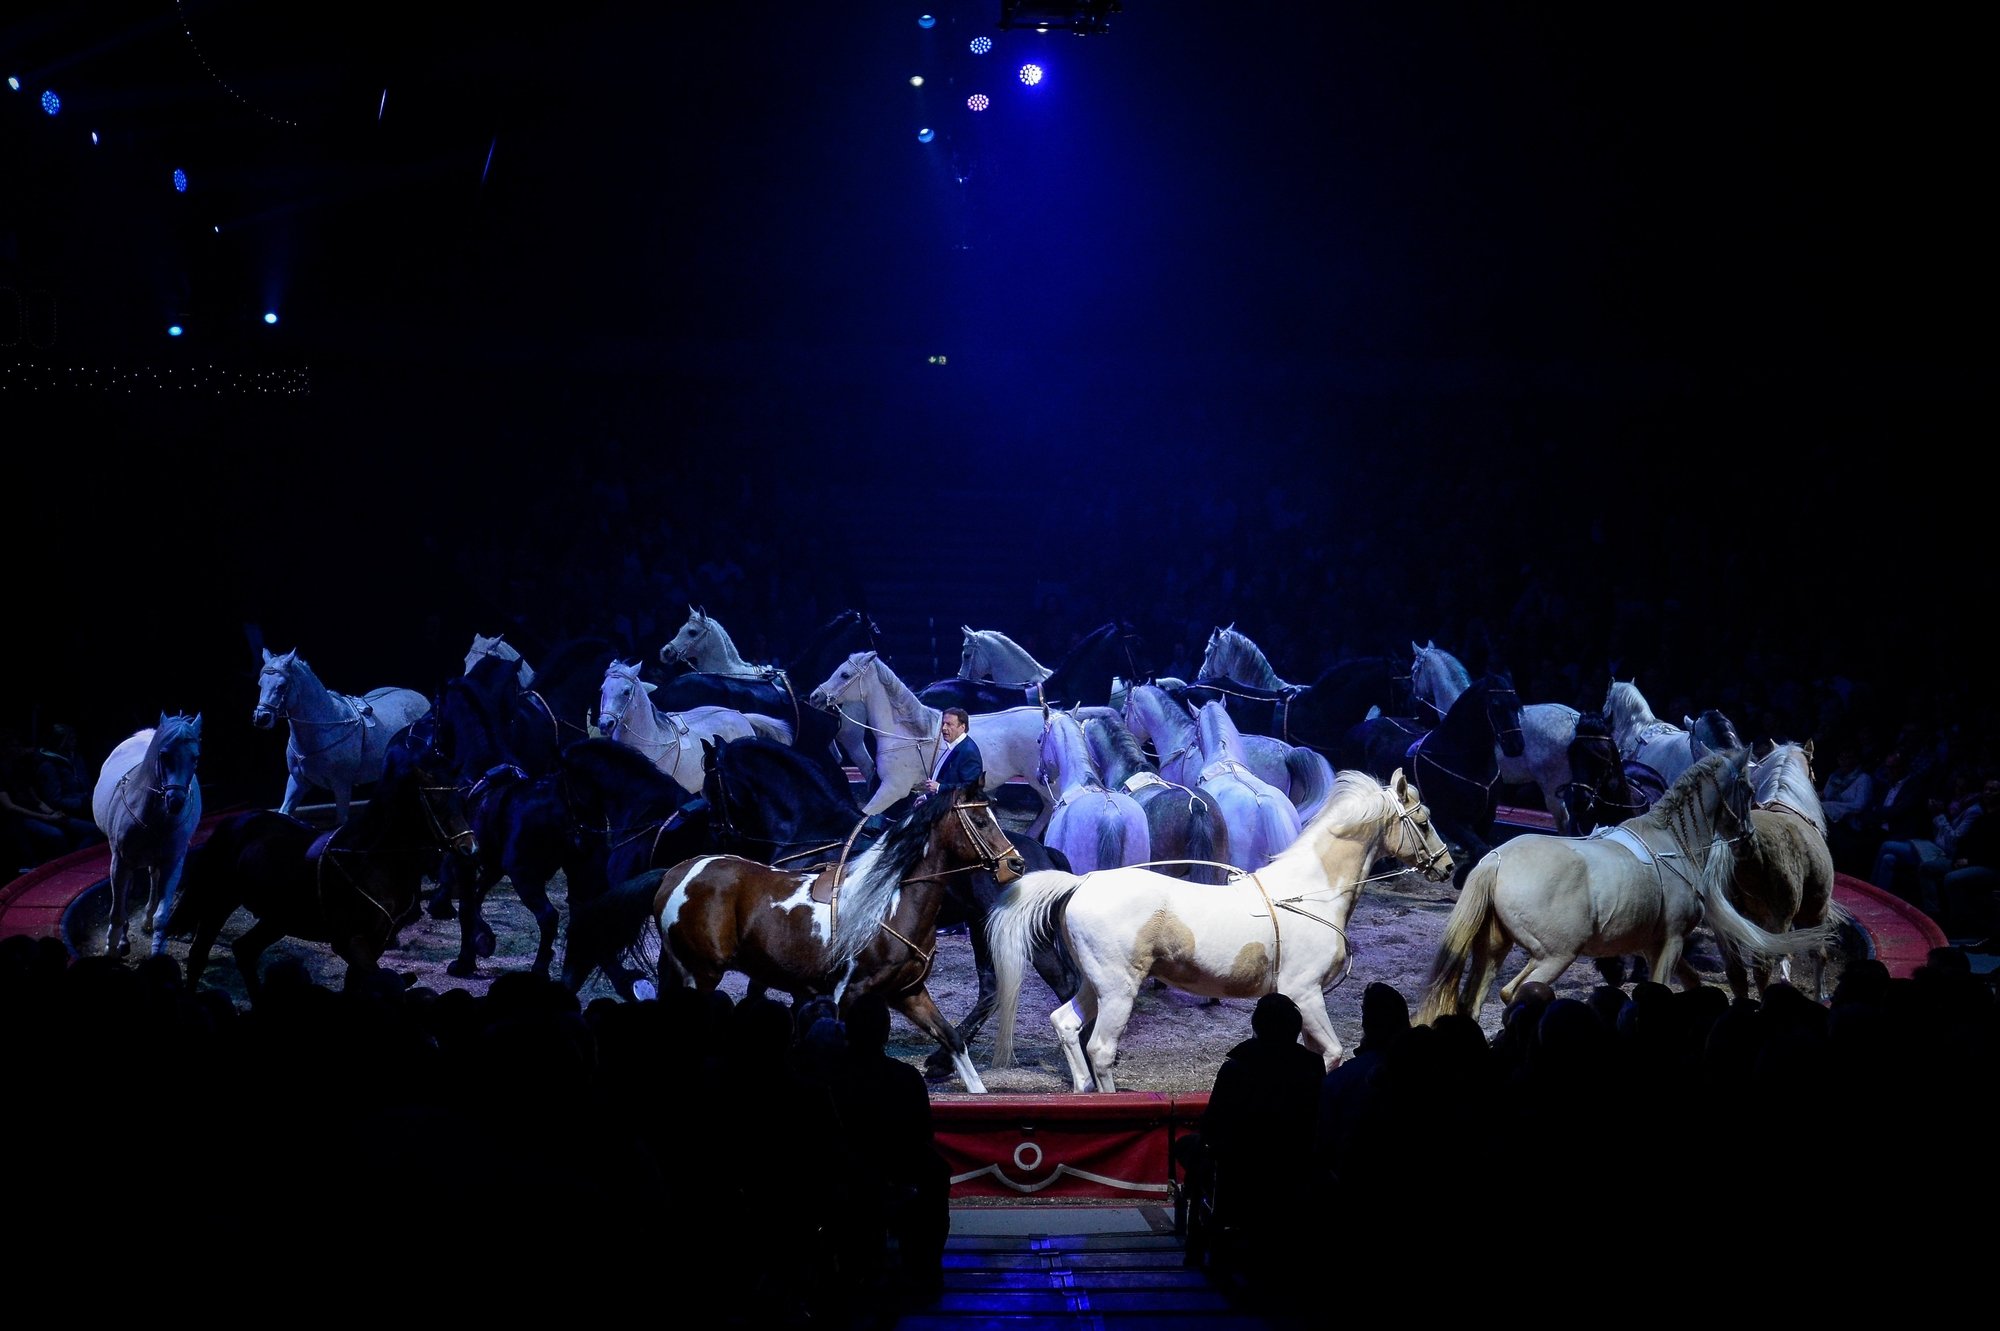 Le législatif de la Ville de Zurich veut interdire les numéros de chevaux dans les cirques comme le Knie.